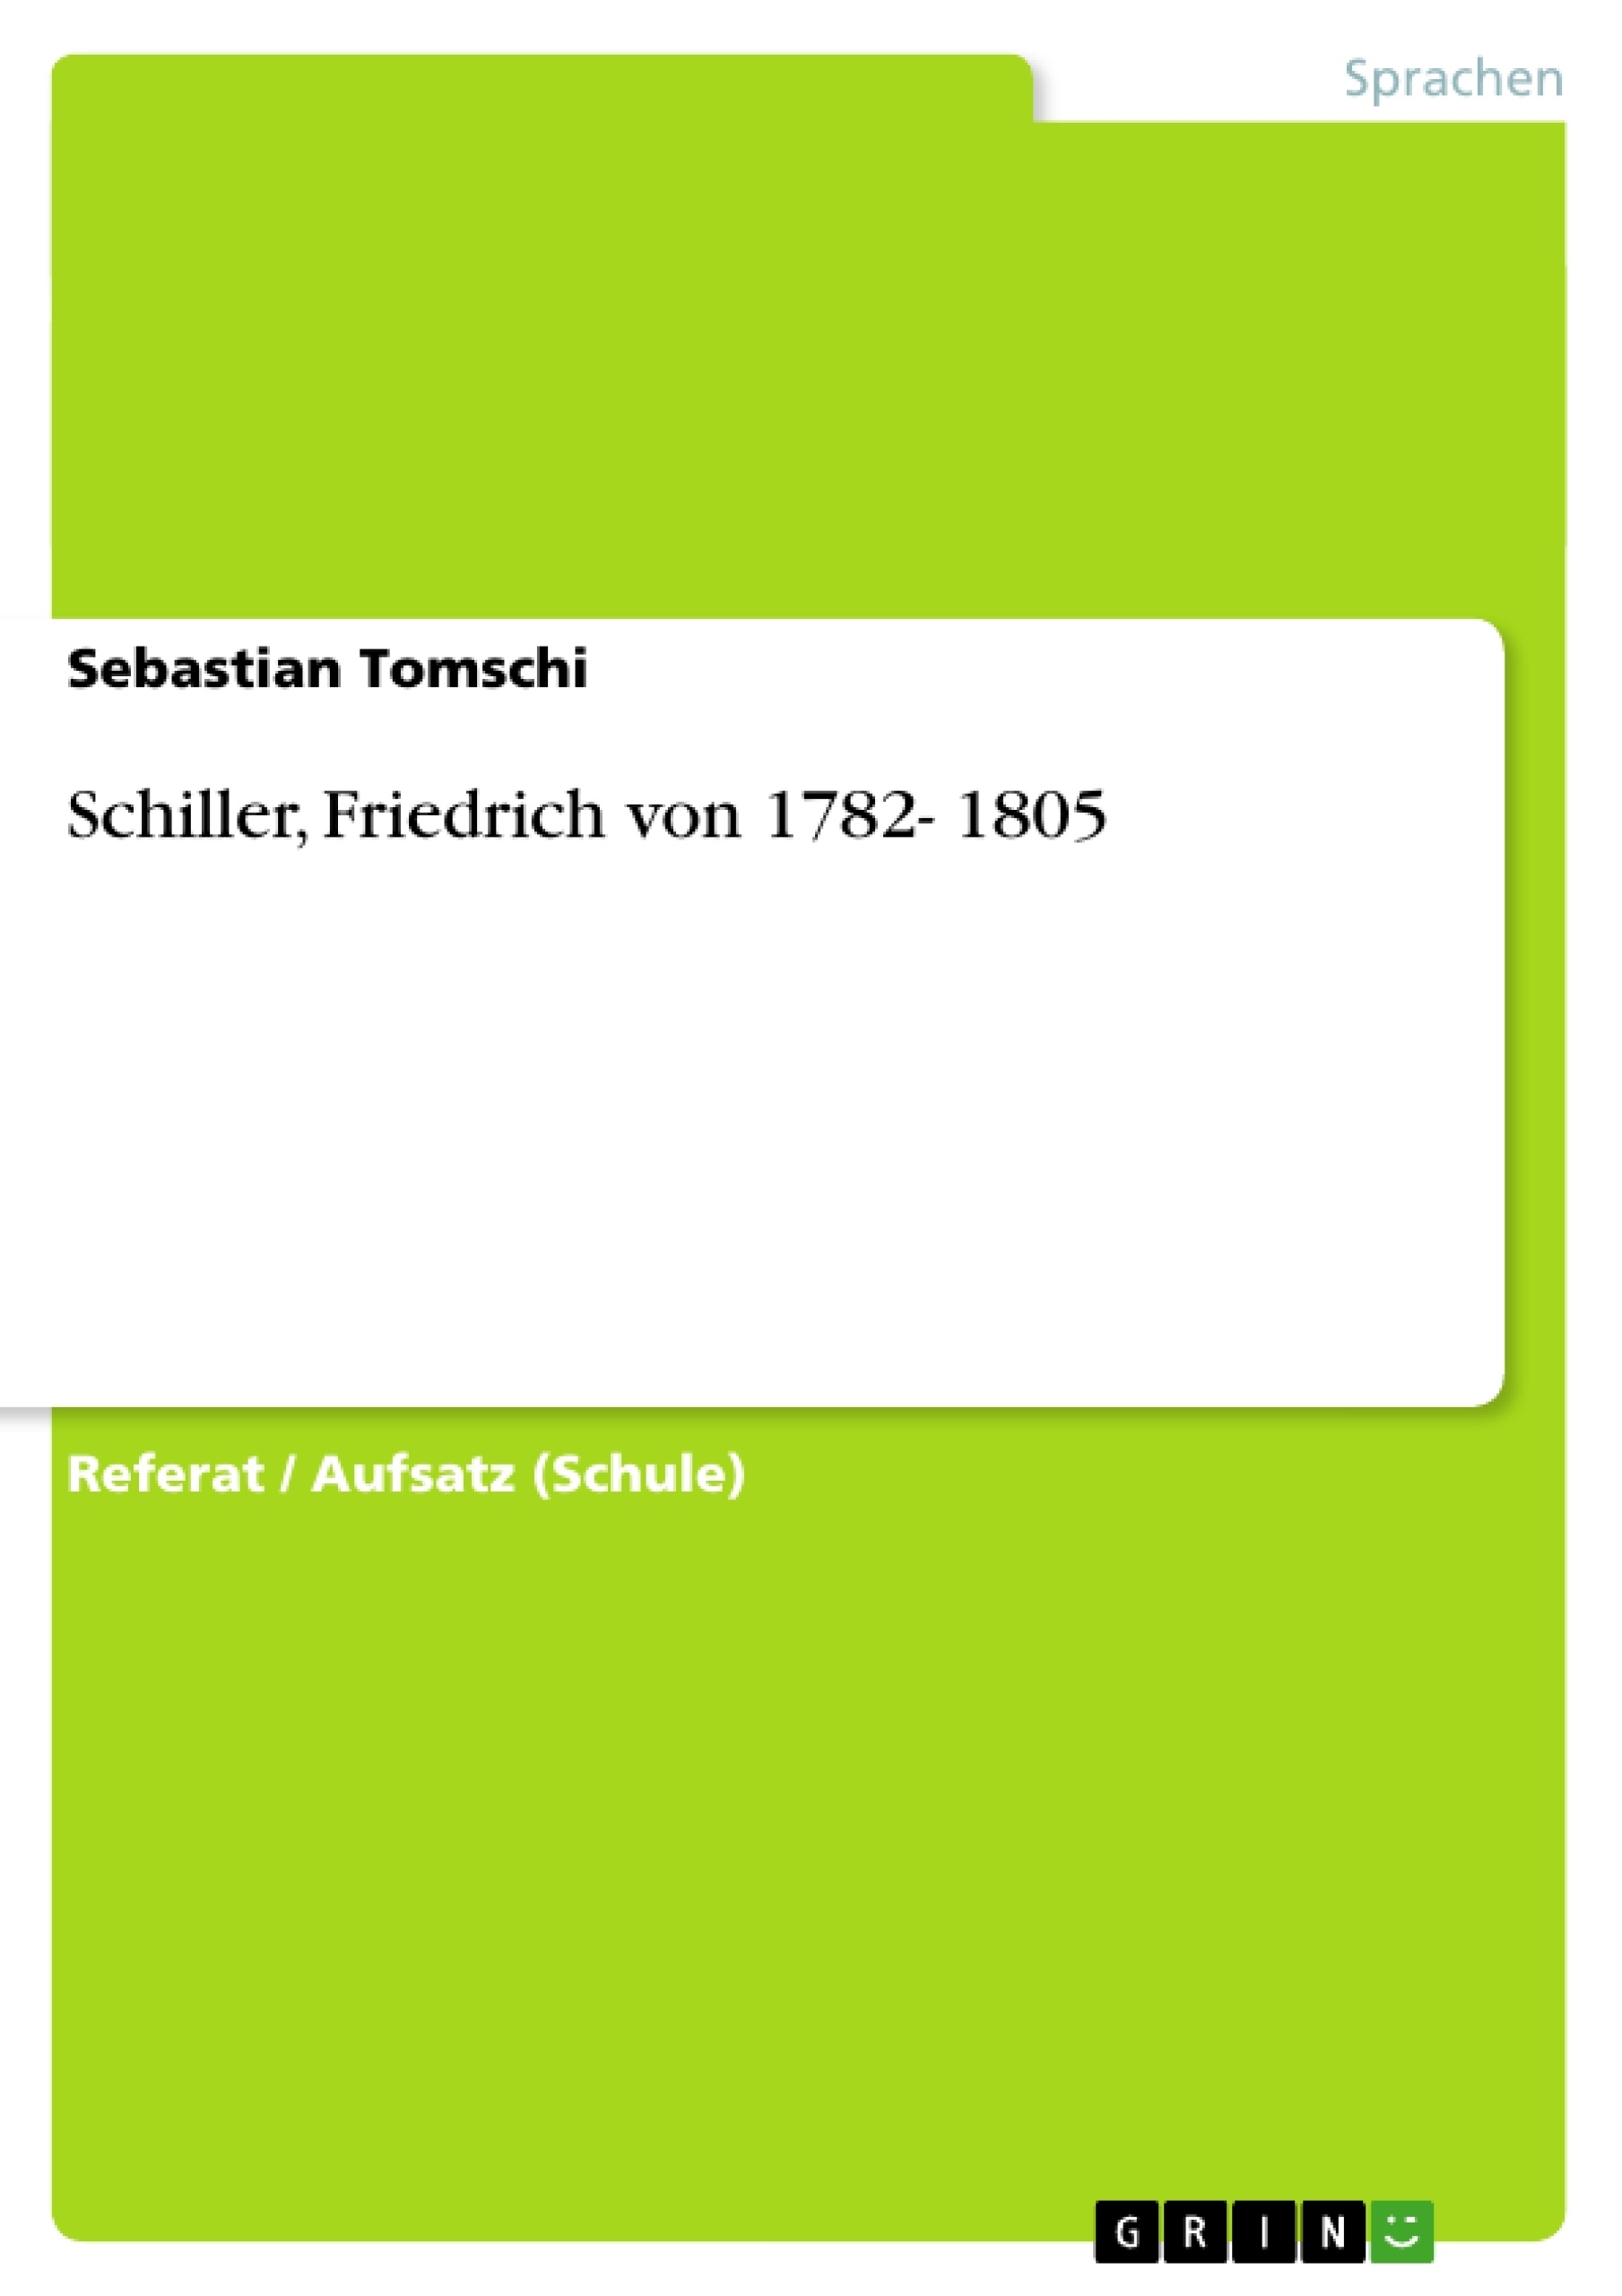 Schillers von Flucht und Stuttgart (à Mannheim von 1782 bis 1785 ;. unter  ber geber j)27,roeit über alles früf eleiftete)er ©fe^te. J'^eugierbcber  ^Die iSTcau rourbe^5 oon alb burd) begcifterten bie£obe5erf)ebungen auf